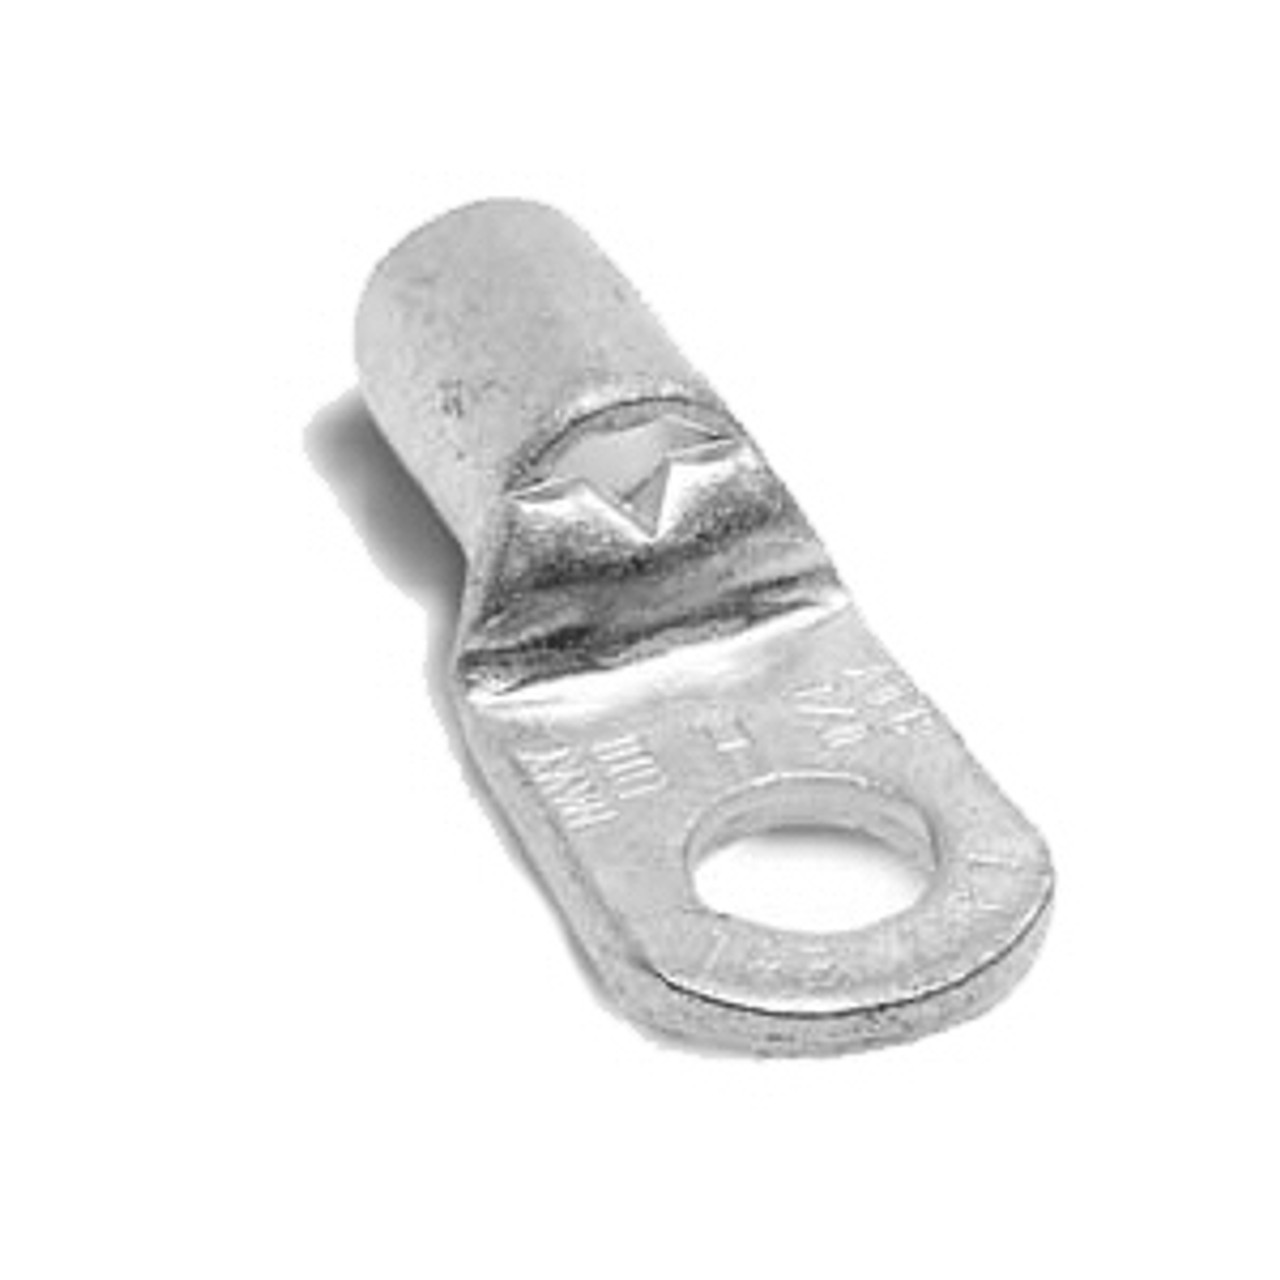 T&B K30-38 - Non-Insulated Tubular Ring